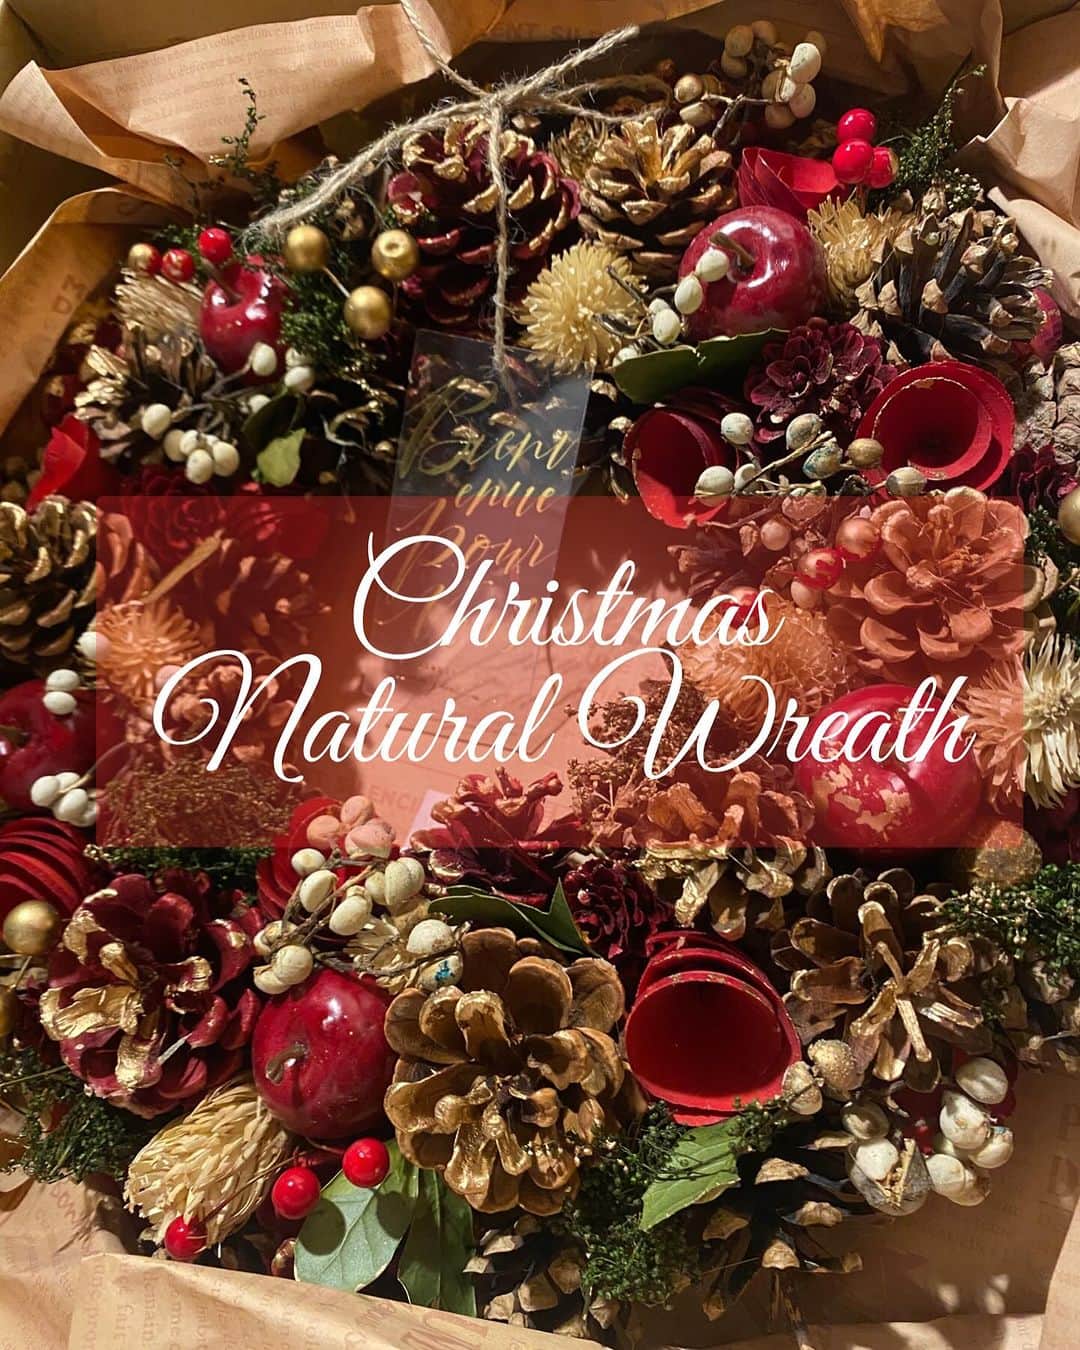 KURAWANKA Officialのインスタグラム：「🎄Christmas Natural Wreath  L ¥4,328(tax in)  もうすぐクリスマスですね🎄✨ 私は街中がキラキラ輝くこの季節が大好きです！ 皆さん、クリスマスに向けた準備はいかがですか？  KURAWANKAにはクリスマスにぴったりな商品がたくさんあります❤️  クリスマスの飾り物！といえば、クリスマスツリーやクリスマスリースが有名ですよね。  そもそもリースとは何なのでしょうか？🎅  リースとは花や葉っぱなどで作られる輪のことで 終わりの無い形は、「幸福がいつまでも続くように」という願いが込められているそうです。💚  また、 欧米では古来から「リースは幸せを運ぶ」という言い伝えがあり、ドアや玄関に飾る風習があります。✨  ご自宅用に買うのも素敵ですが、大切な方へプレゼントするのもとっても素敵ですね！☺️  そしてこのNatural Wreath は 天然素材を使用しており、ひとつひとつ手作りで製造されています。🤲✨  たくさんの幸せが訪れますように。 と願いを込めて、あなたとあなたの大切な方へおひとついかがでしょうか✨  KURAWANKAでは、様々なリースがございますので是非ご覧くださいませ🎄  ーーーーーーーーーーー KURAWANKA公式Instagramでは、 雑貨屋ならではの暮らしお役立ち商品情報を投稿しています📌 いいね、フォローよろしくお願いします♥ᵕ̈* ⁡ KURAWANKAについて詳しくはこちら！ Please check it out 👇🛍️ https://zakka-kurawanka.com ⁡ @kurawankajapan   #枚方雑貨屋#枚方#枚方ビオルネ#KURAWANKA #クラワンカ#クリスマス#クリスマスリース」